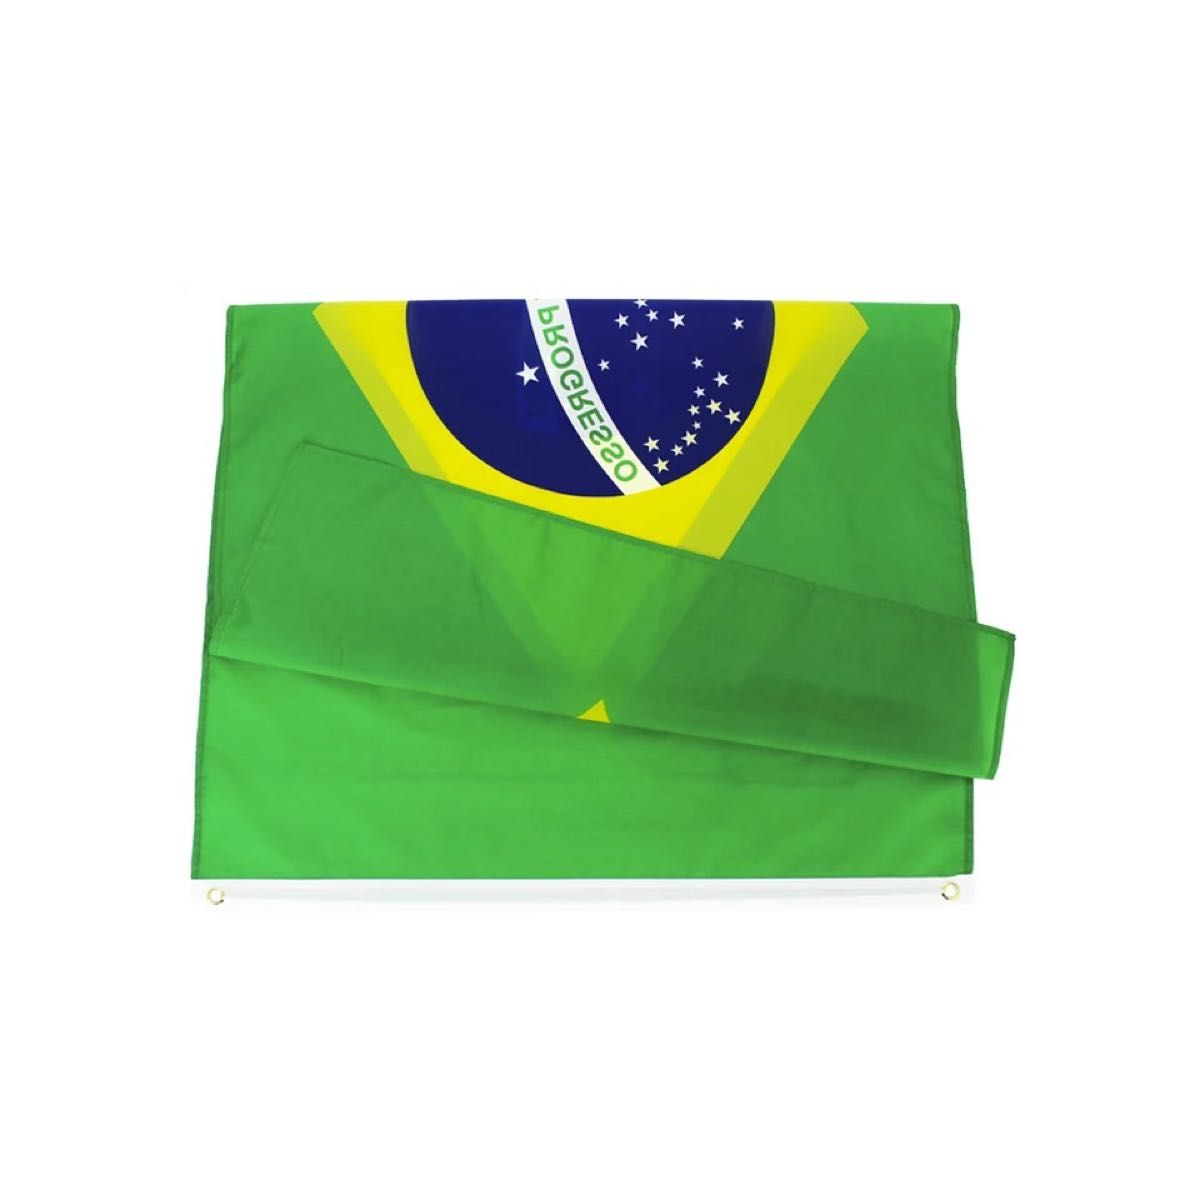 ブラジル 国旗 フラッグ 応援 送料無料 150cm x 90cm 新品